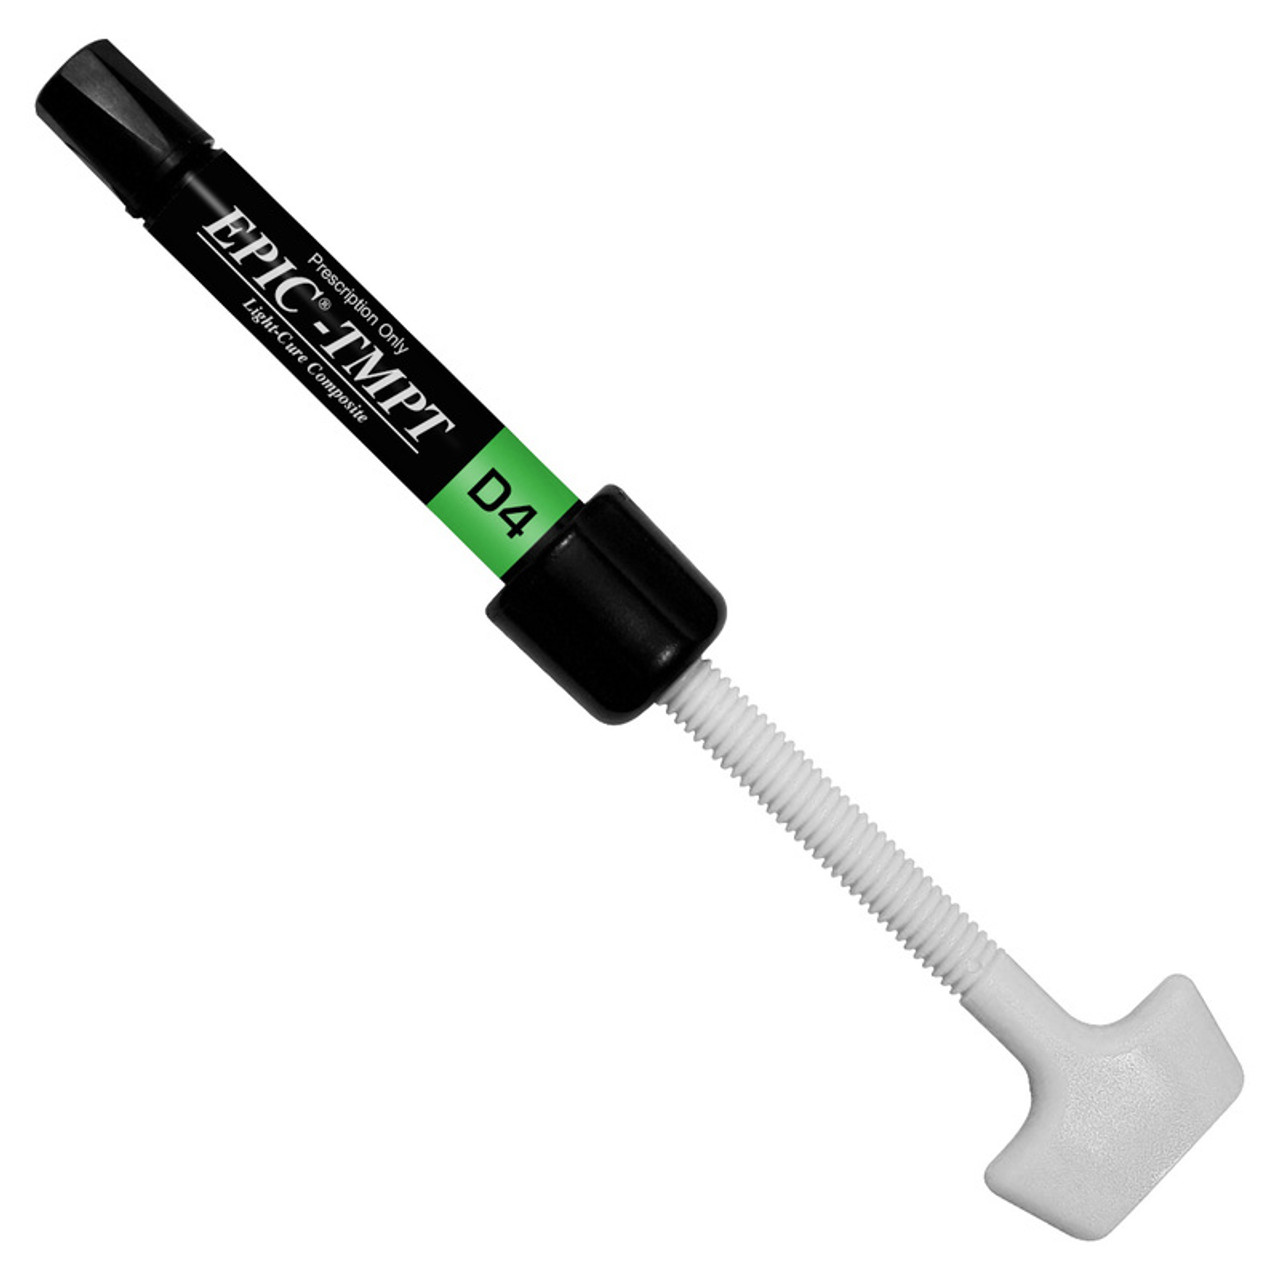 EPIC-TMPT D4 (3 gram syringe)